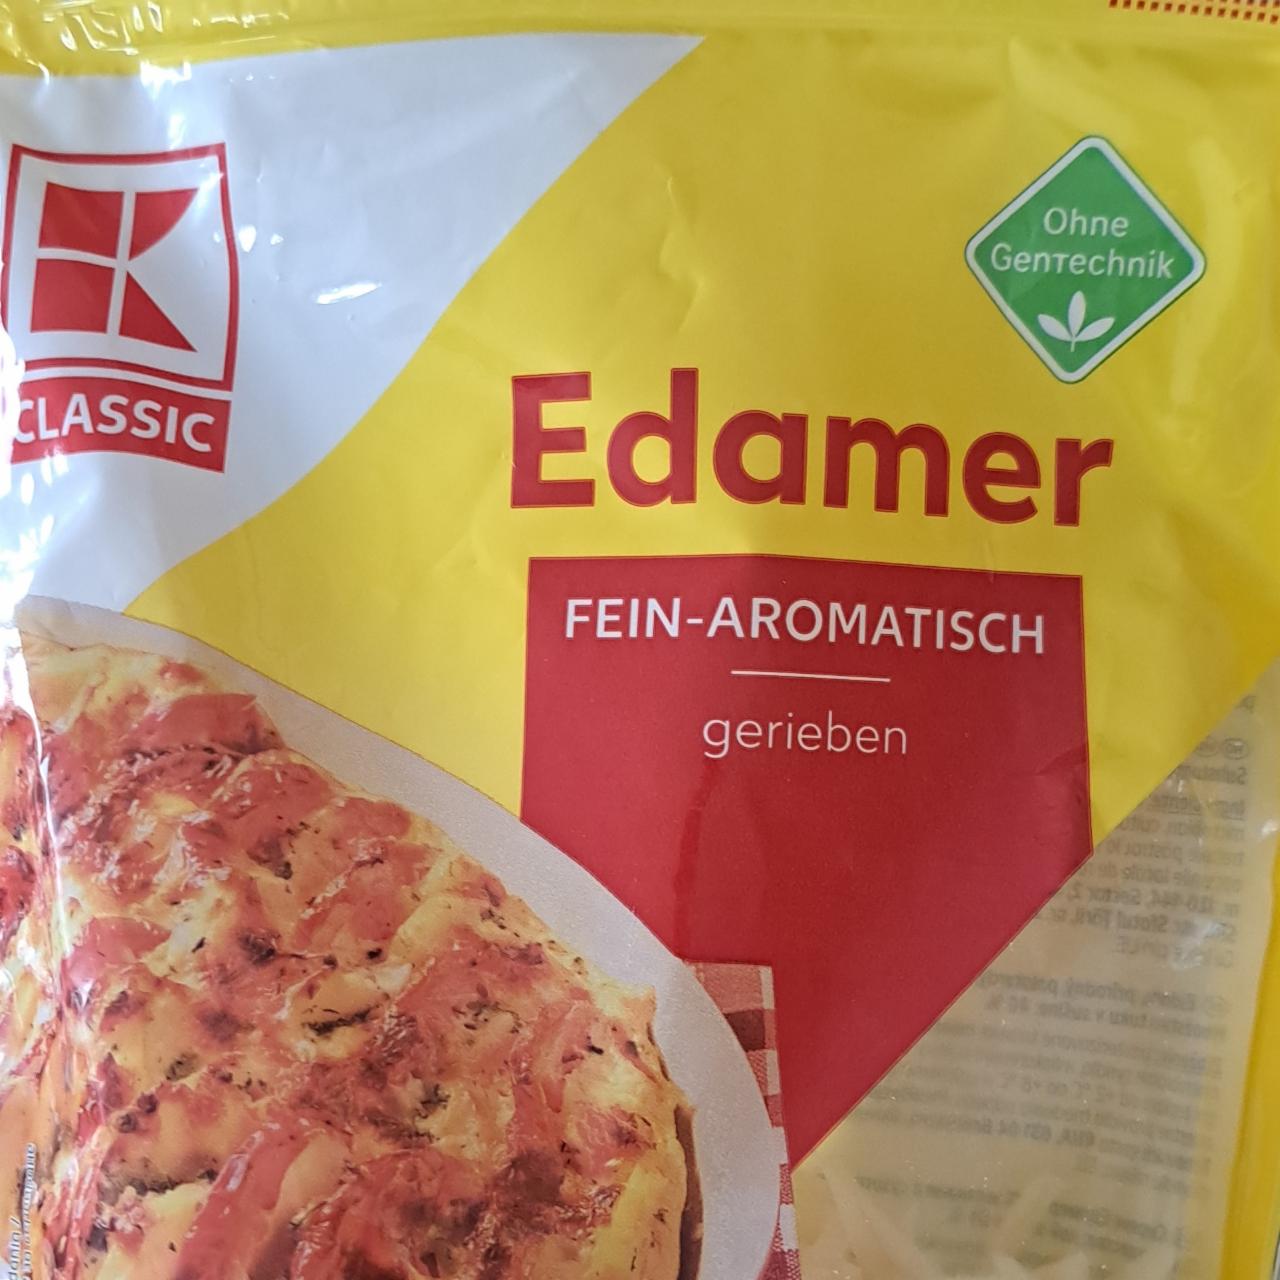 Fotografie - Edamer fein-aromatisch in Scheiben 40% K-Classic